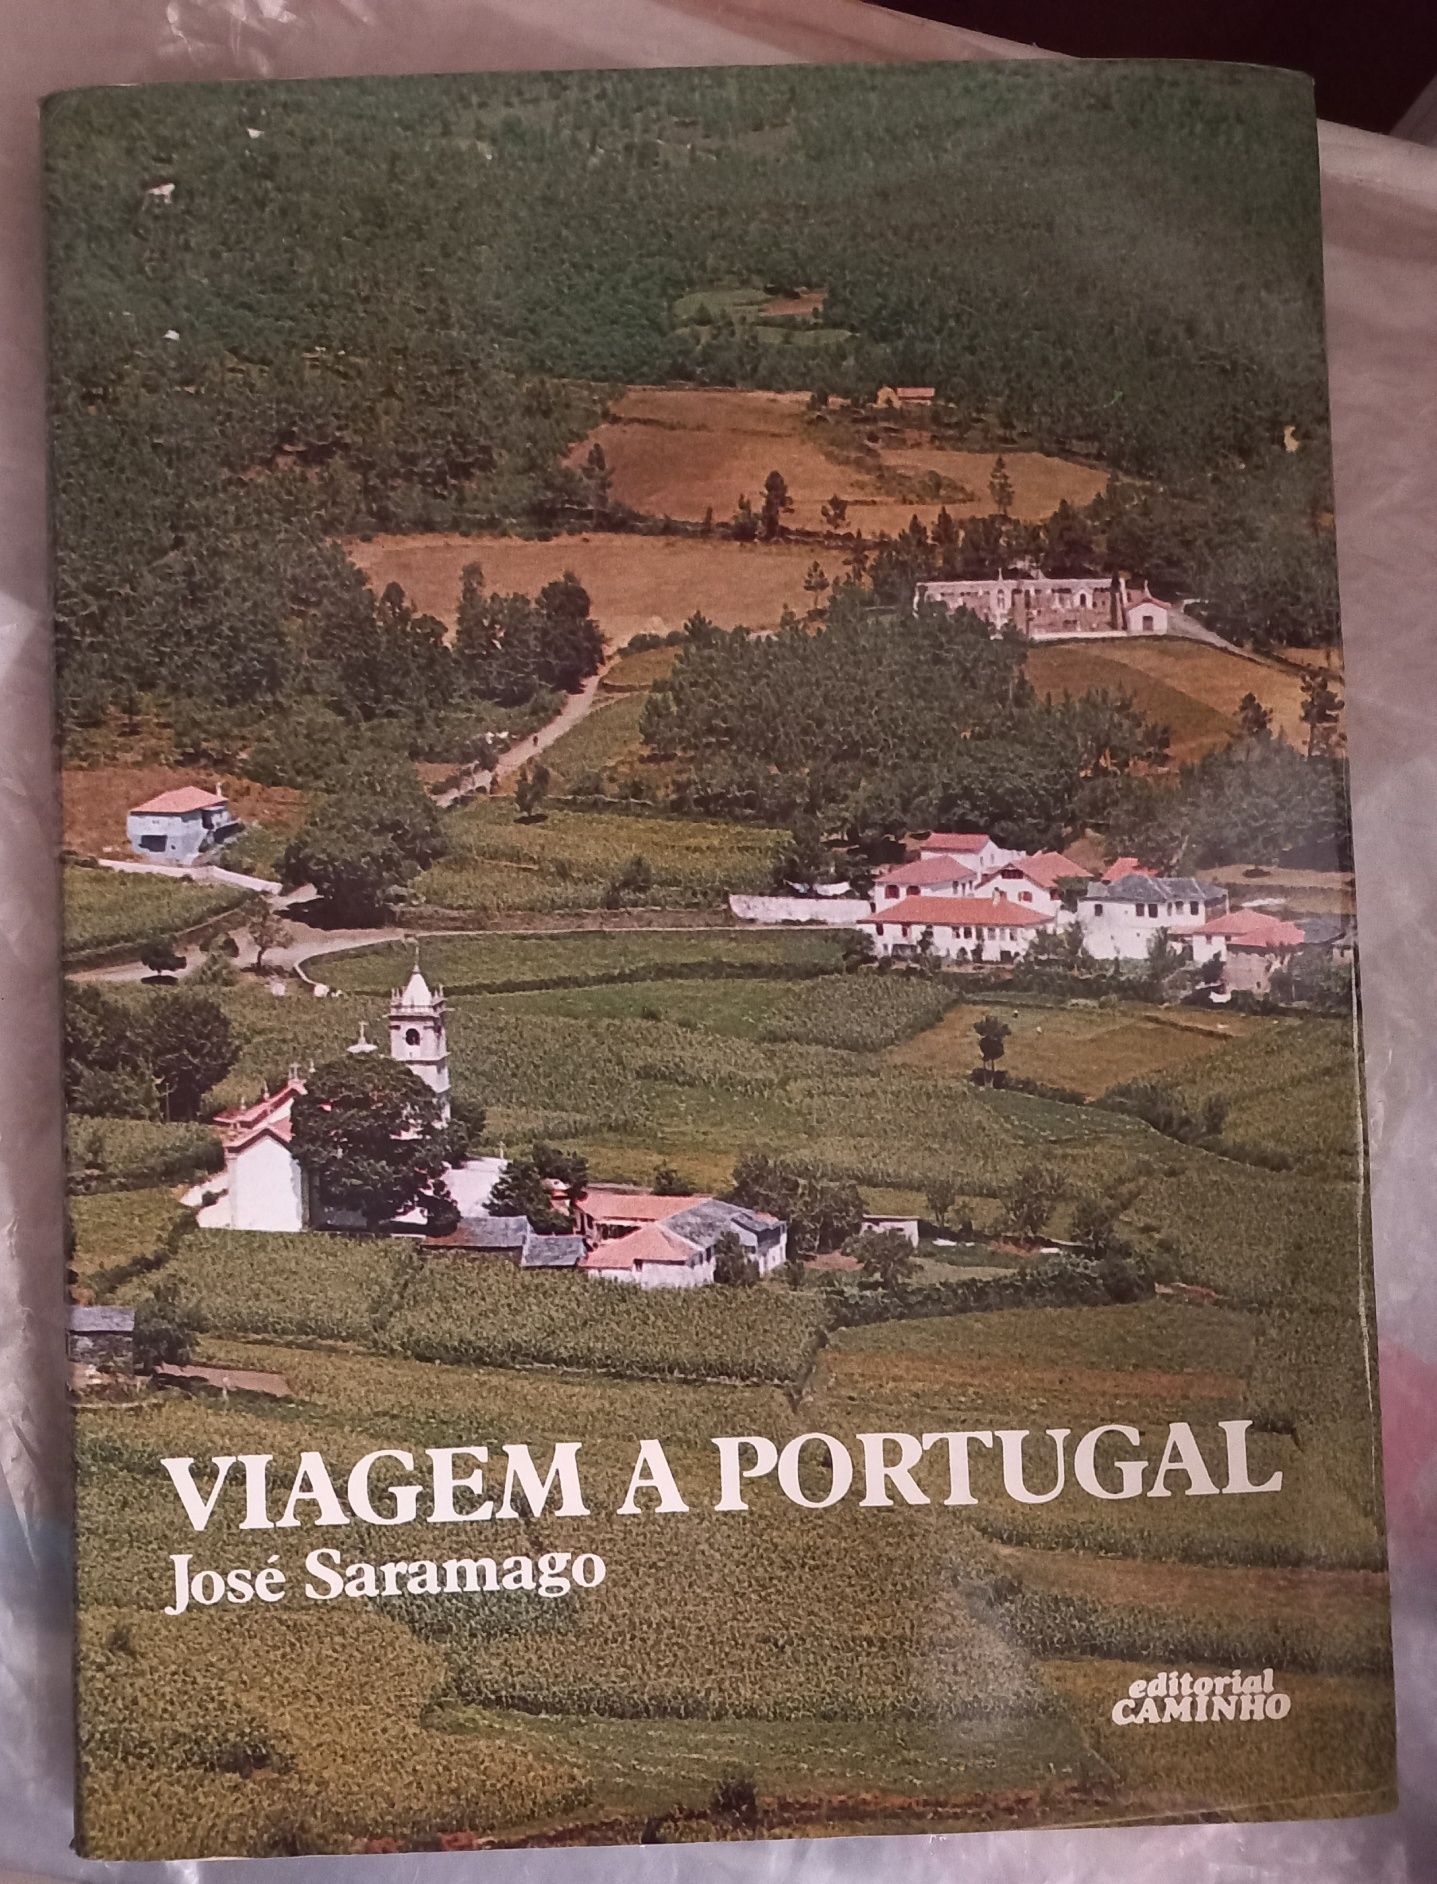 Viagem a Portugal, José Saramago